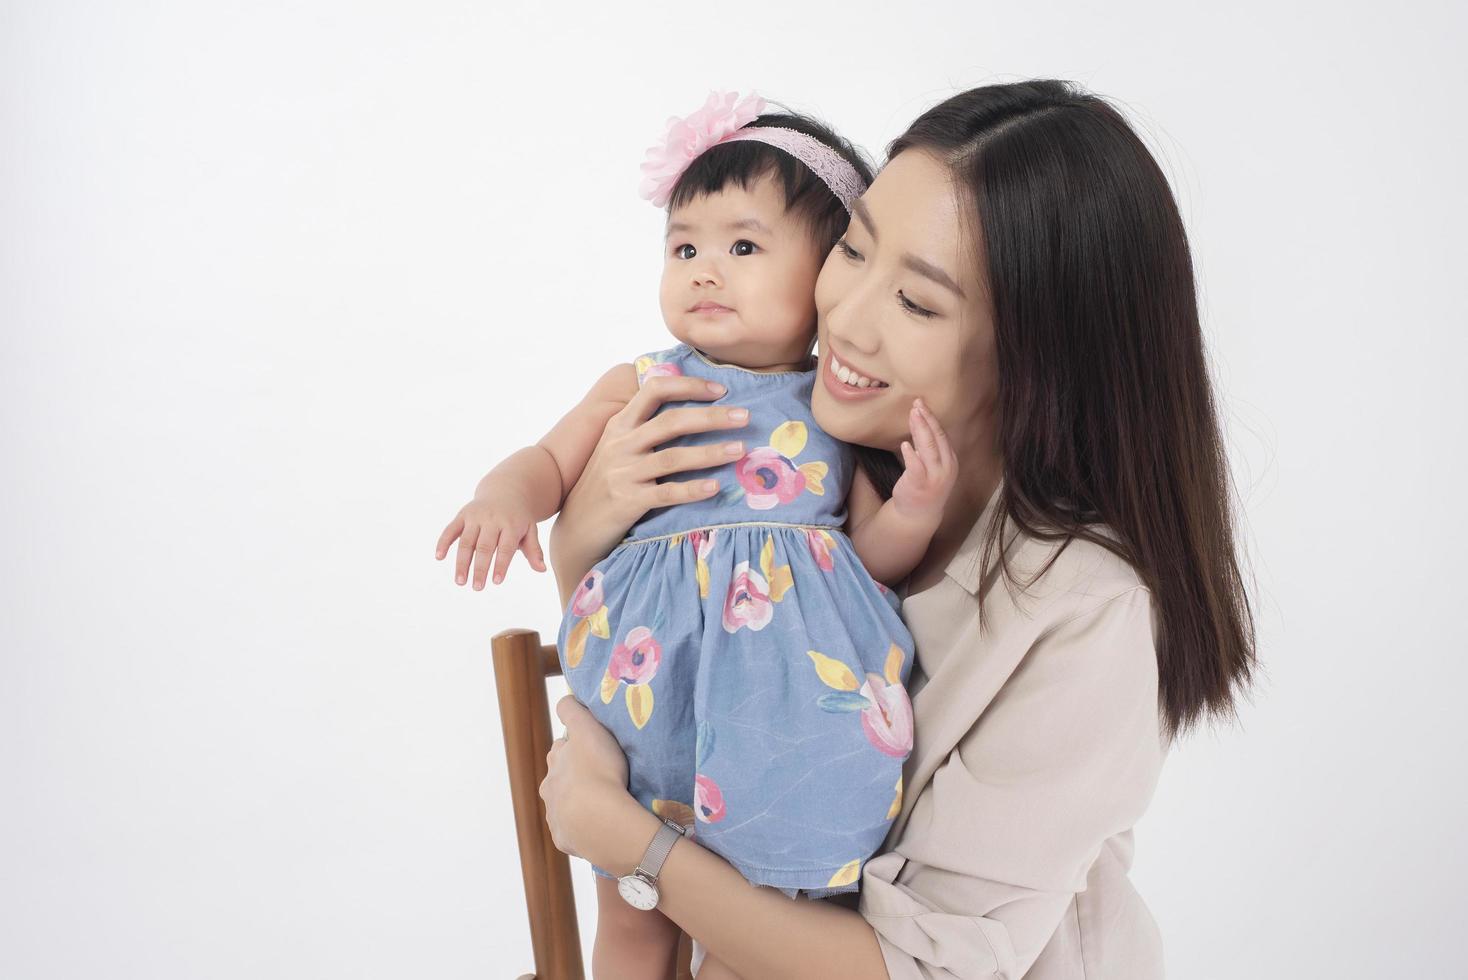 asiatische Mutter und entzückendes Baby sind glücklich auf weißem Hintergrund foto